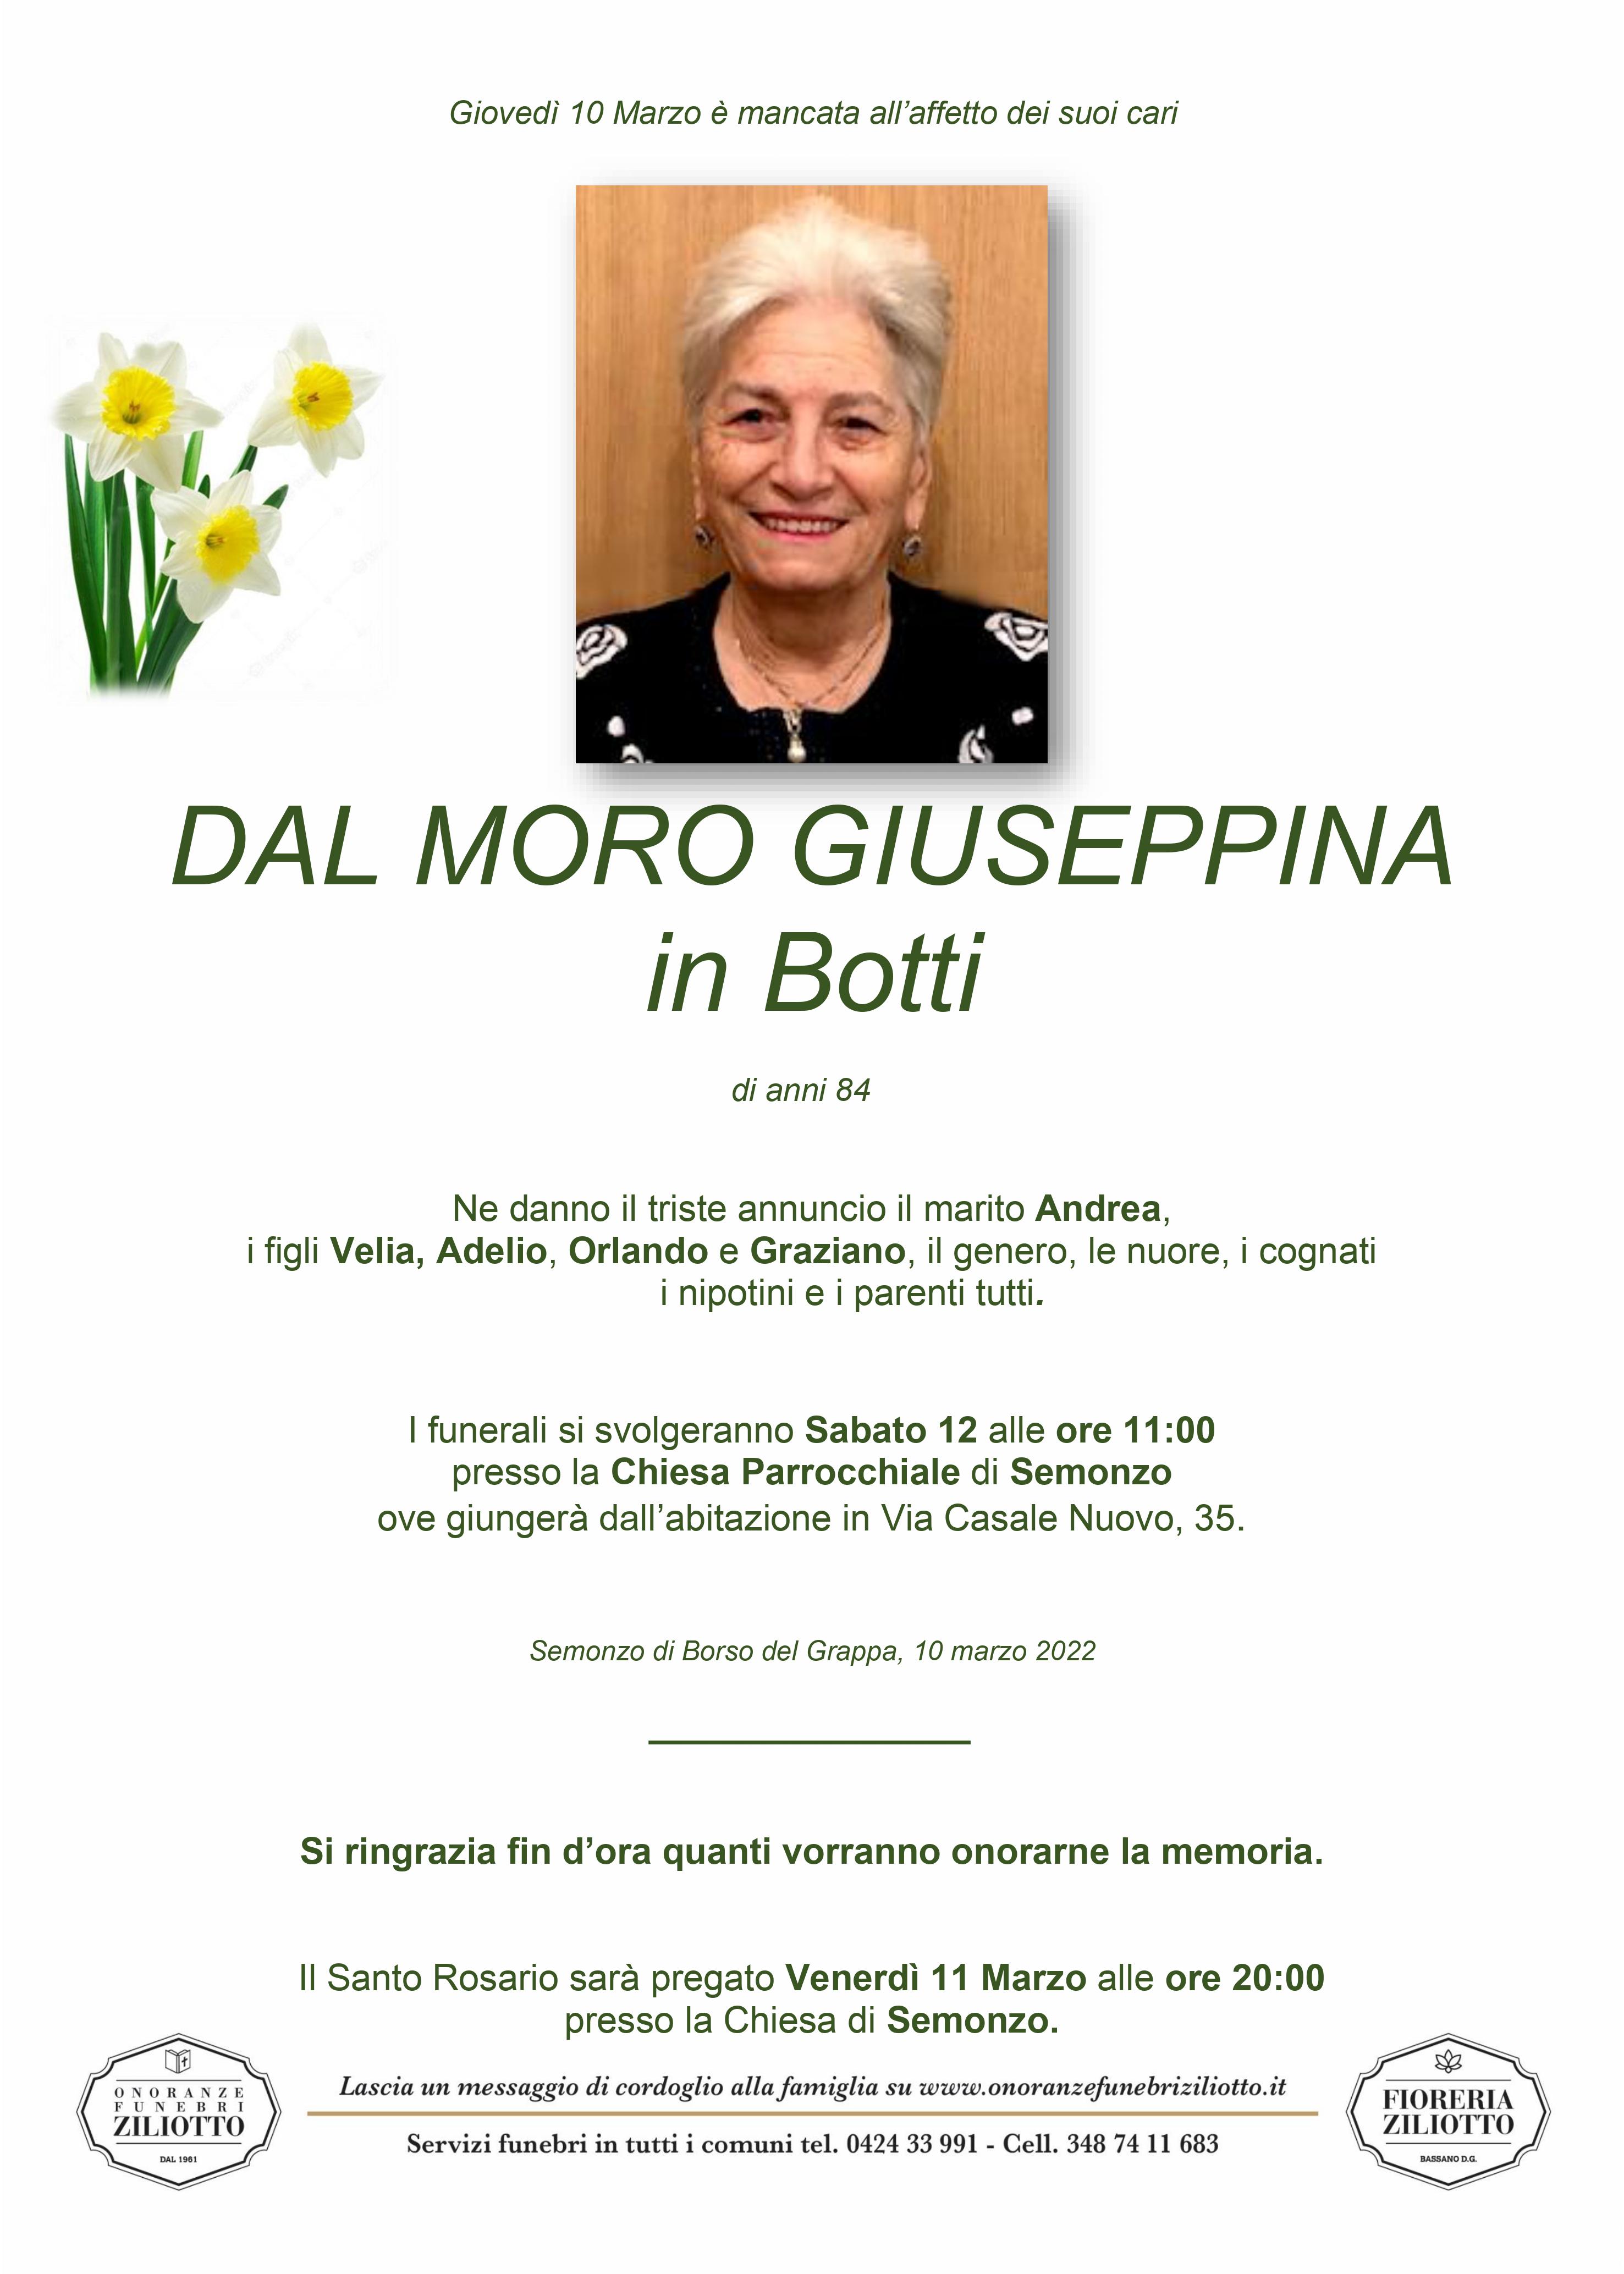 Giuseppina Dal Moro - 84 anni - Semonzo di Borso del Gr